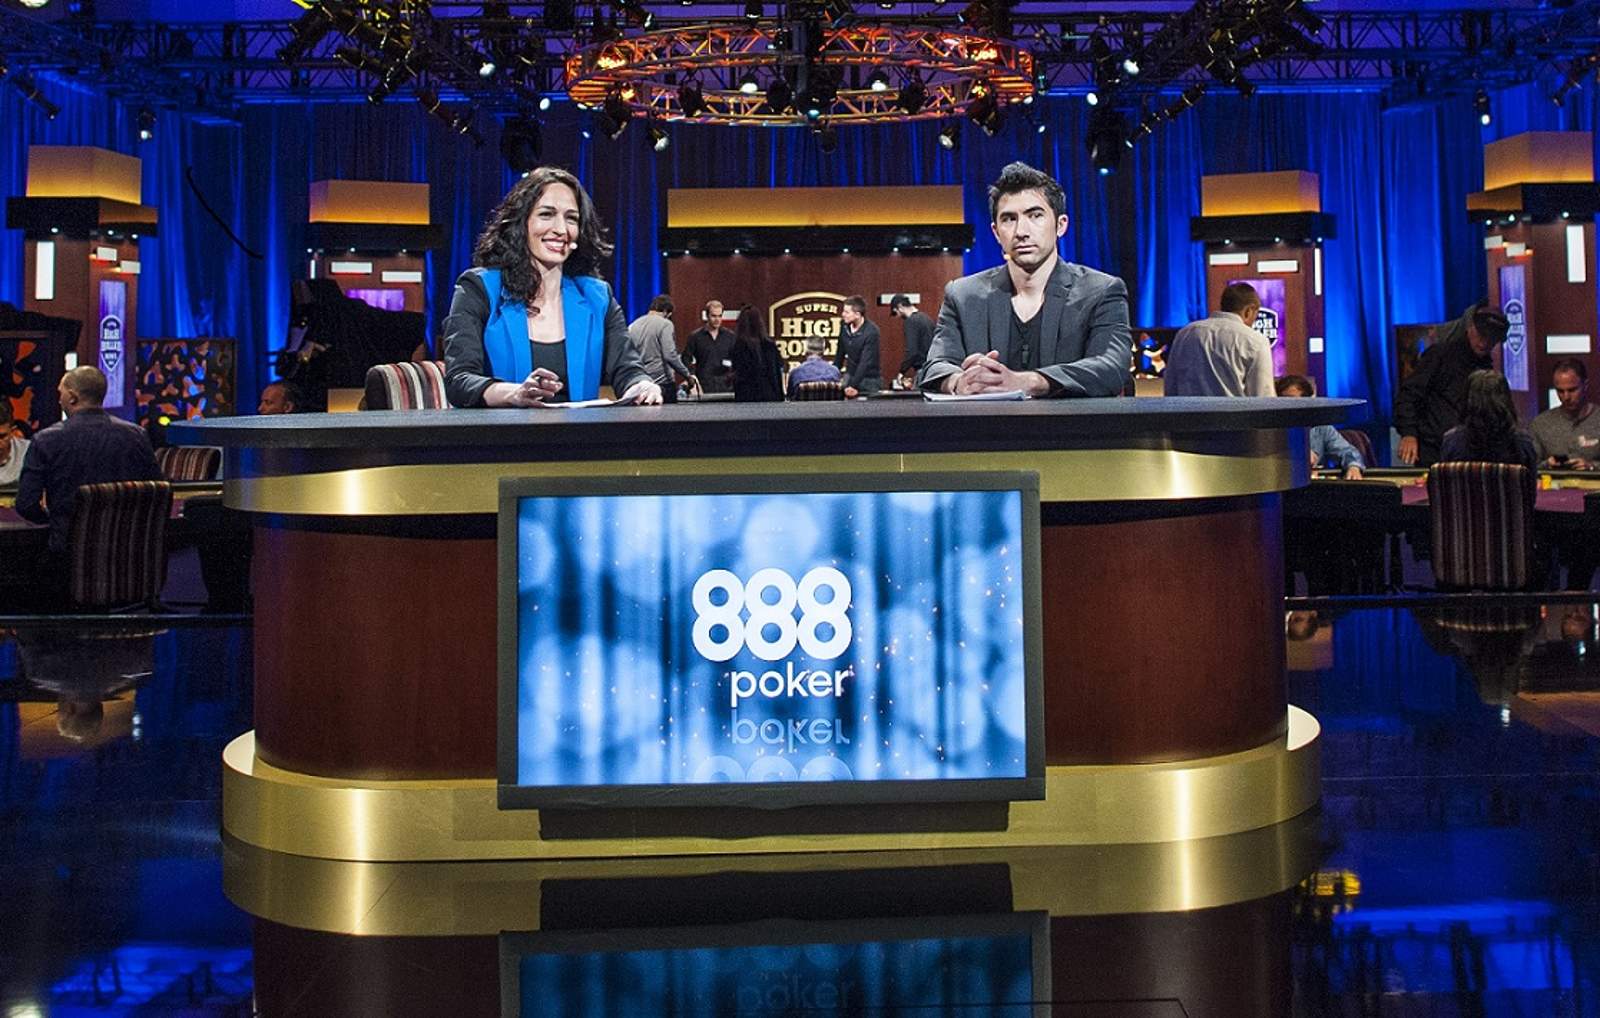 Poker Central Welcomes Back 888Poker as 2017 SHR Bowl Sponsor